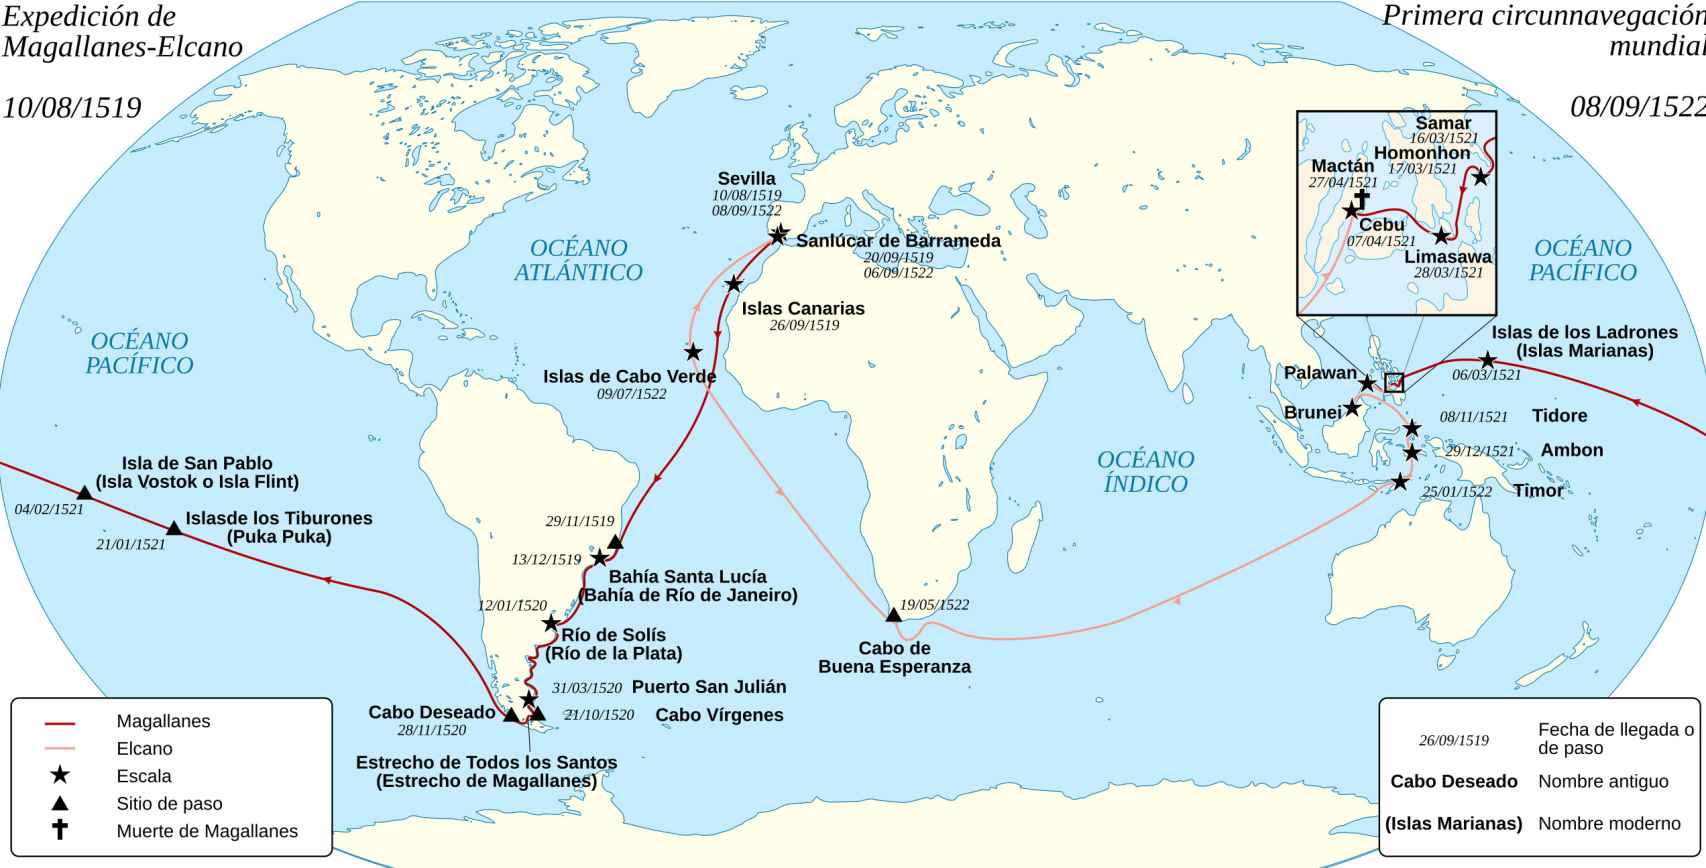 La expedición de Magallanes y Elcano.